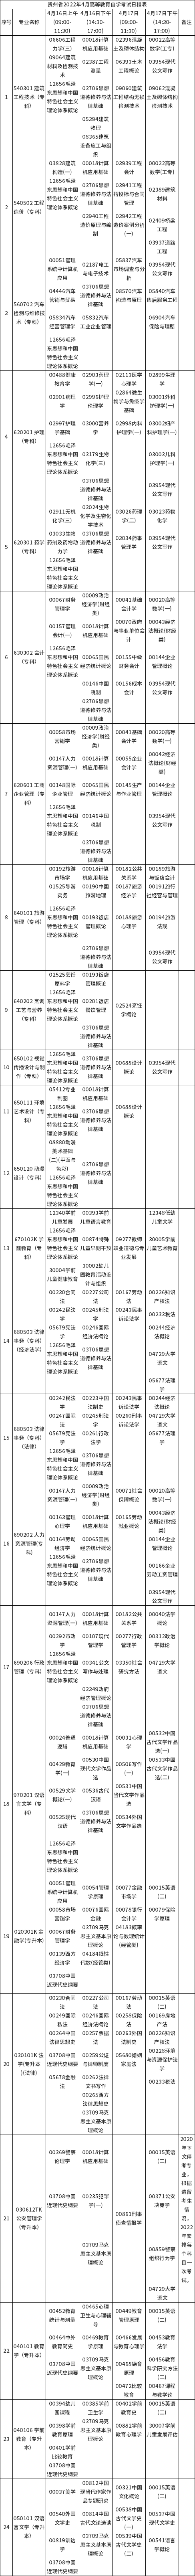 贵州自考日程表